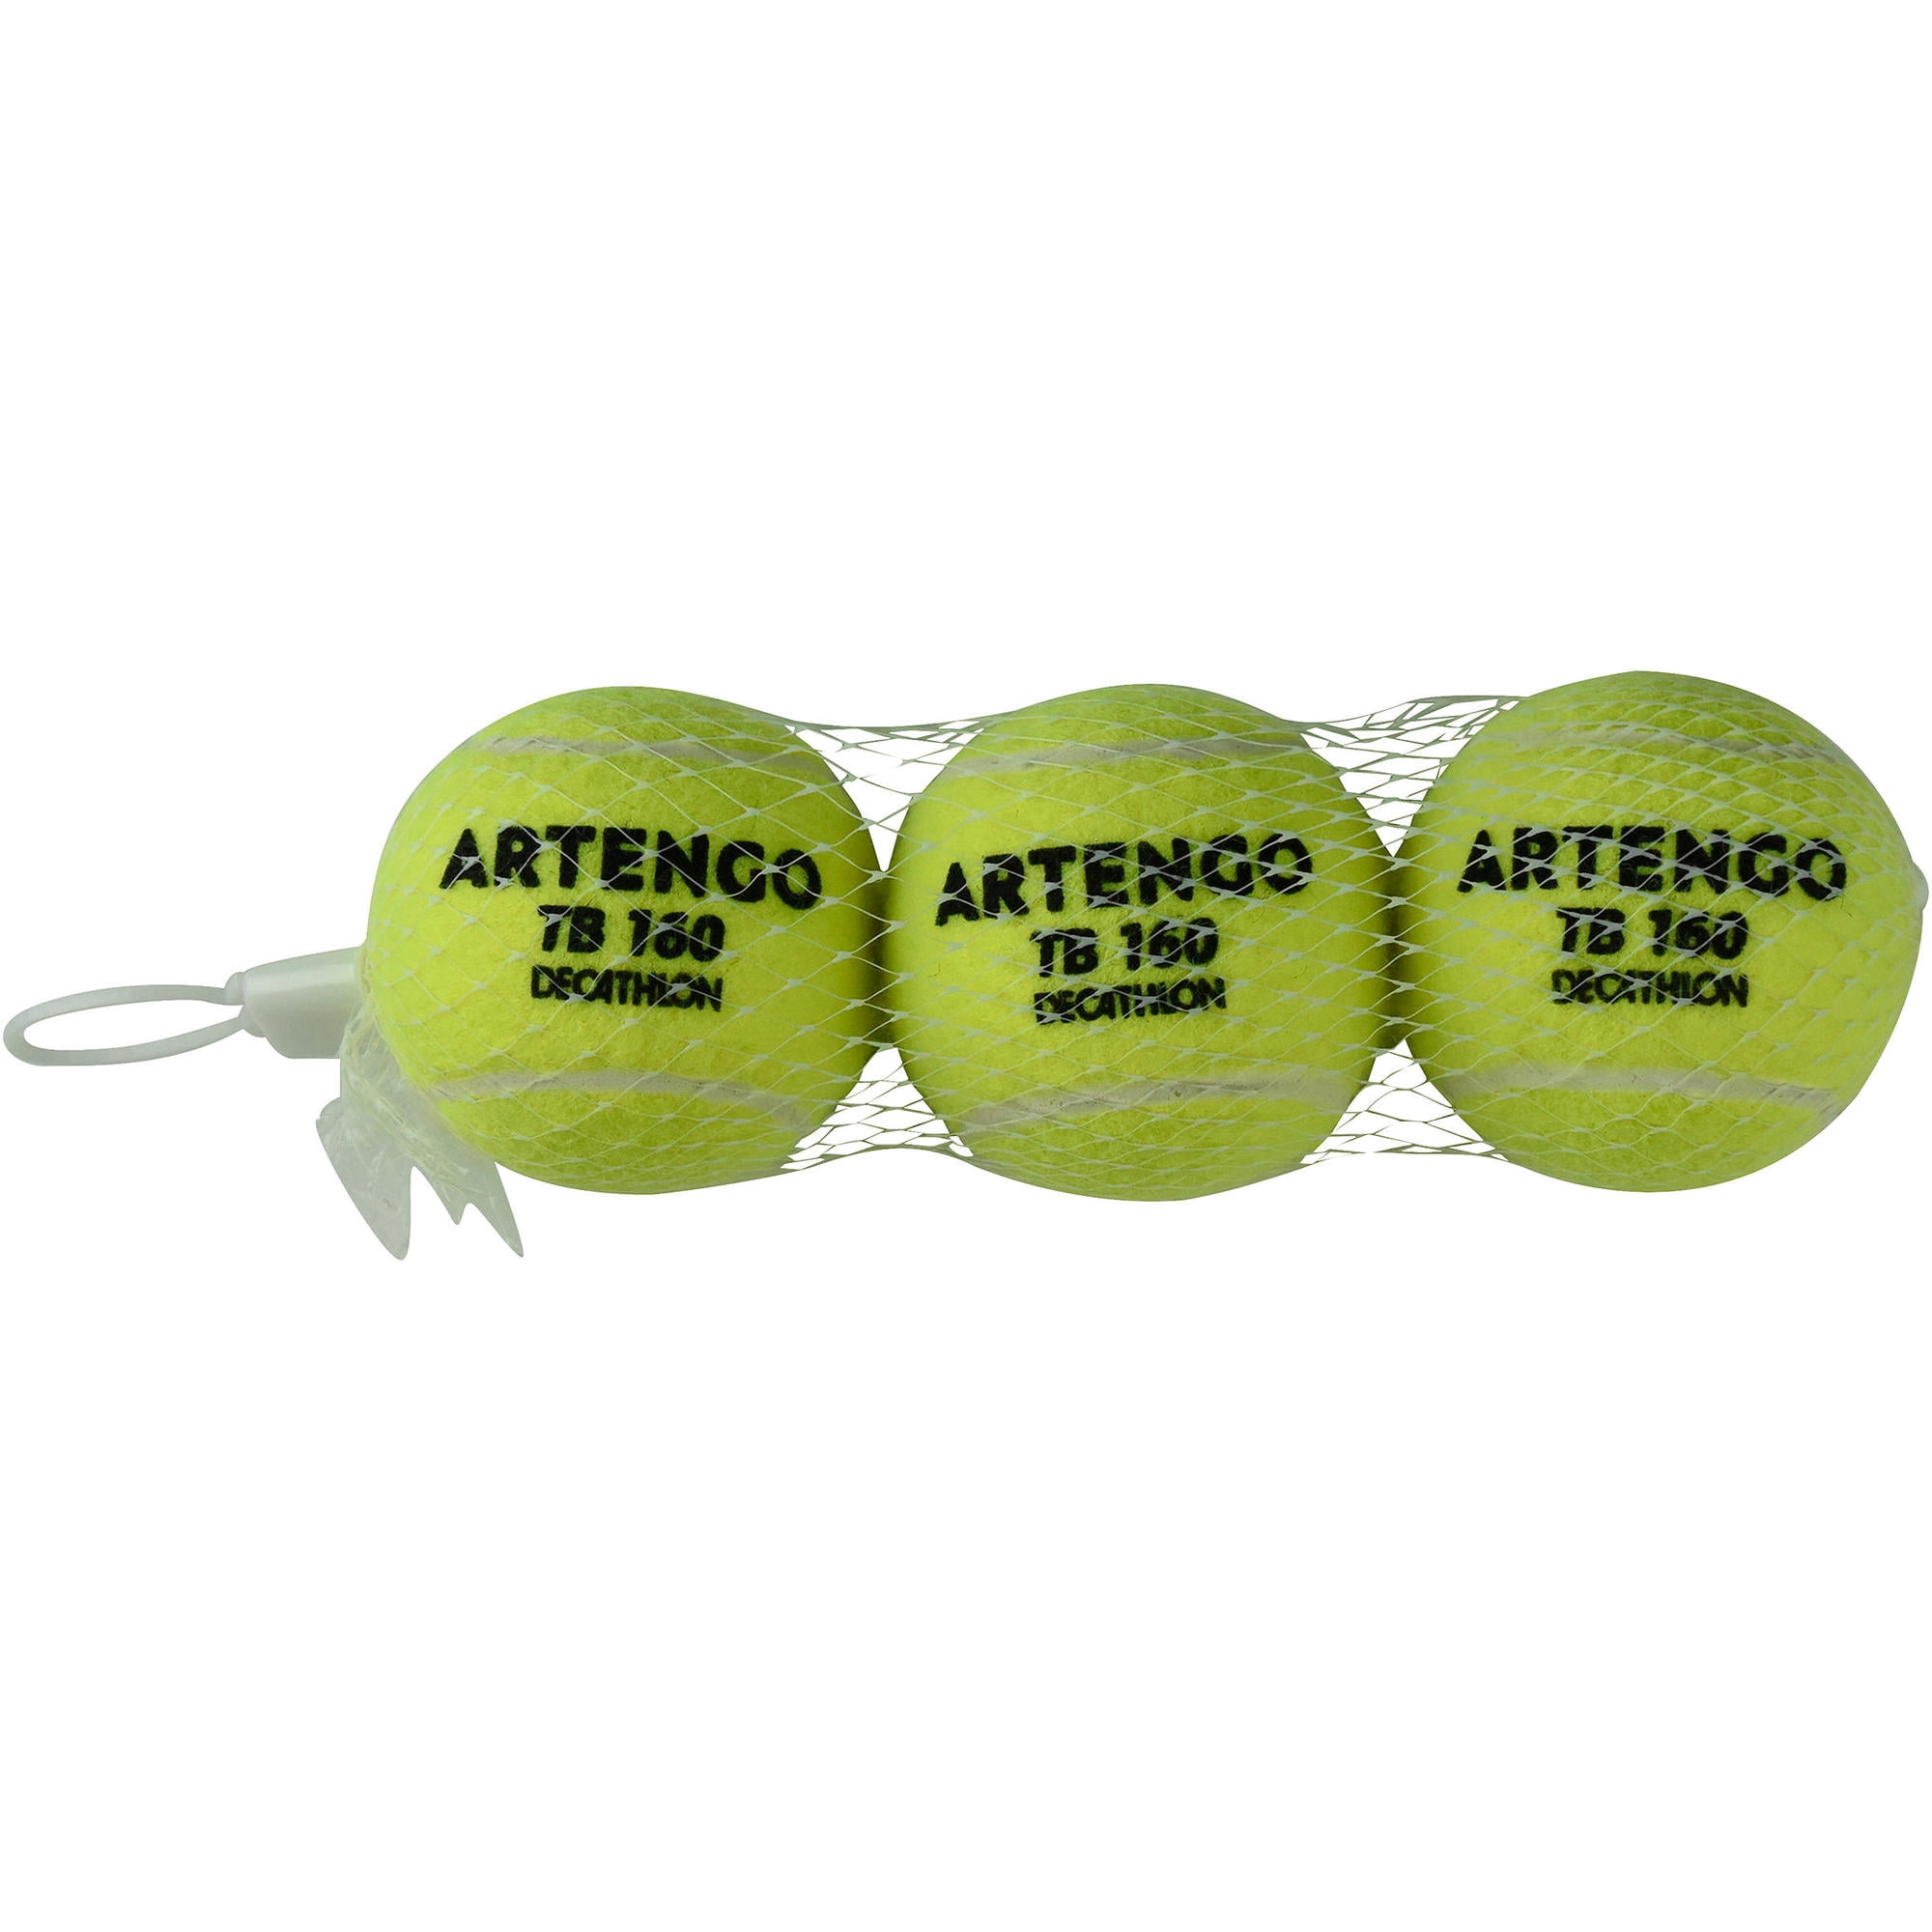 artengo tennis ball